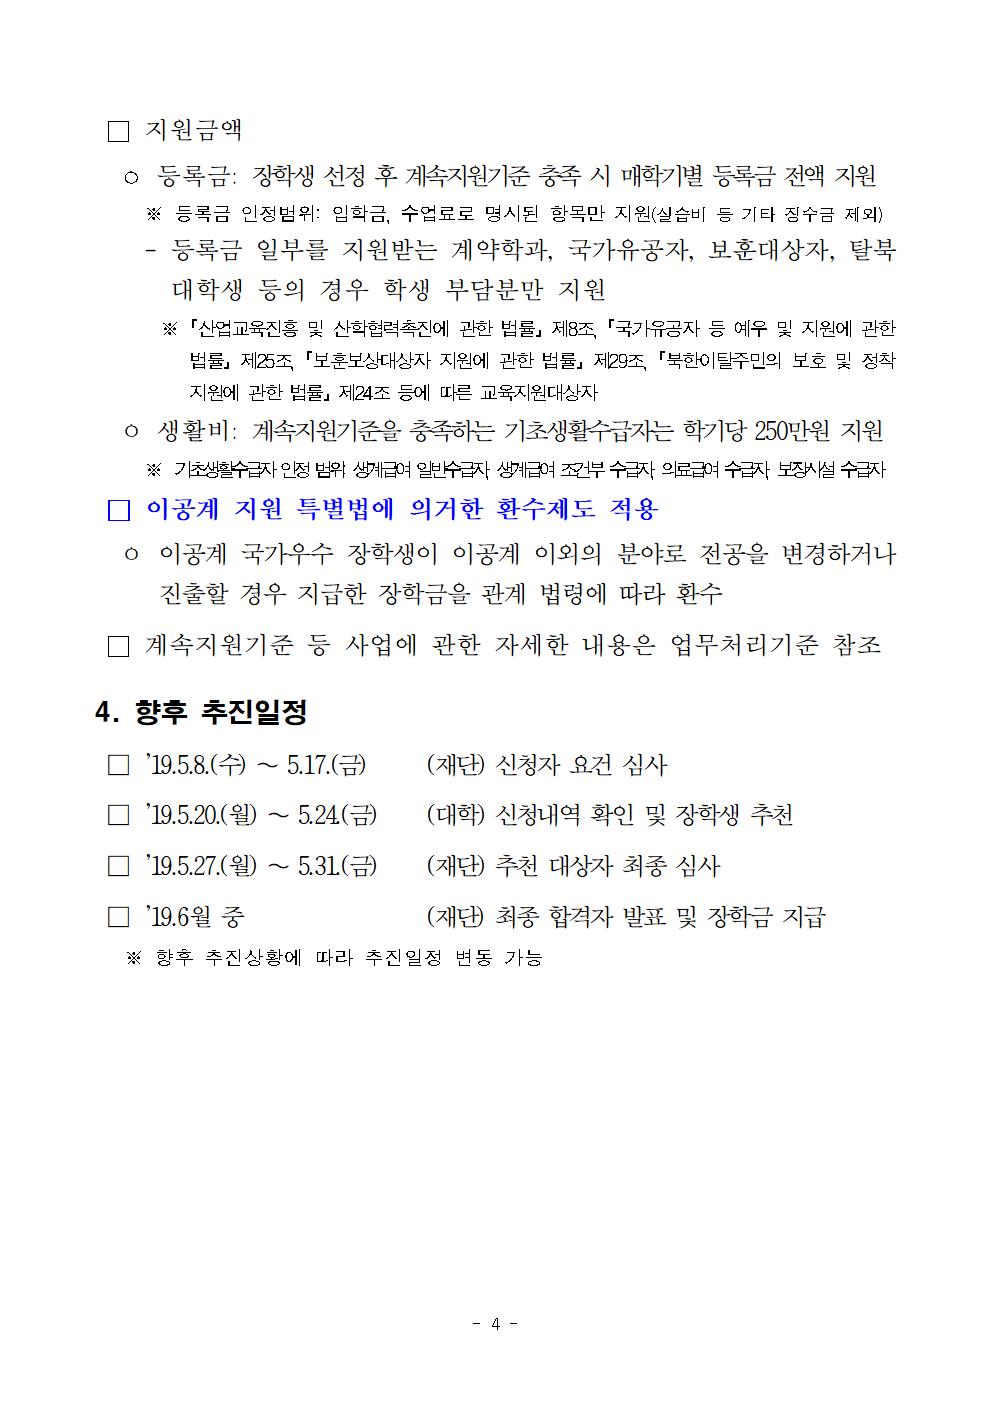 2019-1 국가우수장학금(이공계) 수능우수유형 신청 안내